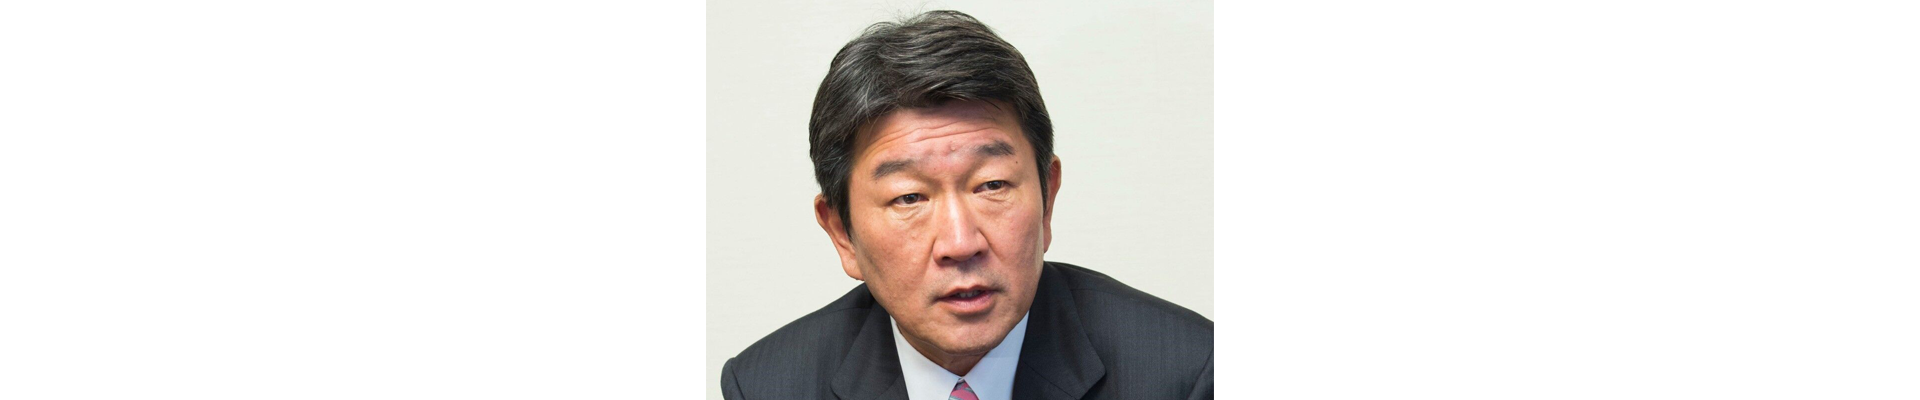 یادداشت اختصاصی وزیر خارجه ژاپن؛ روابط تغییرناپذیر، دوستانه و دیرینه بین ایران و ژاپن